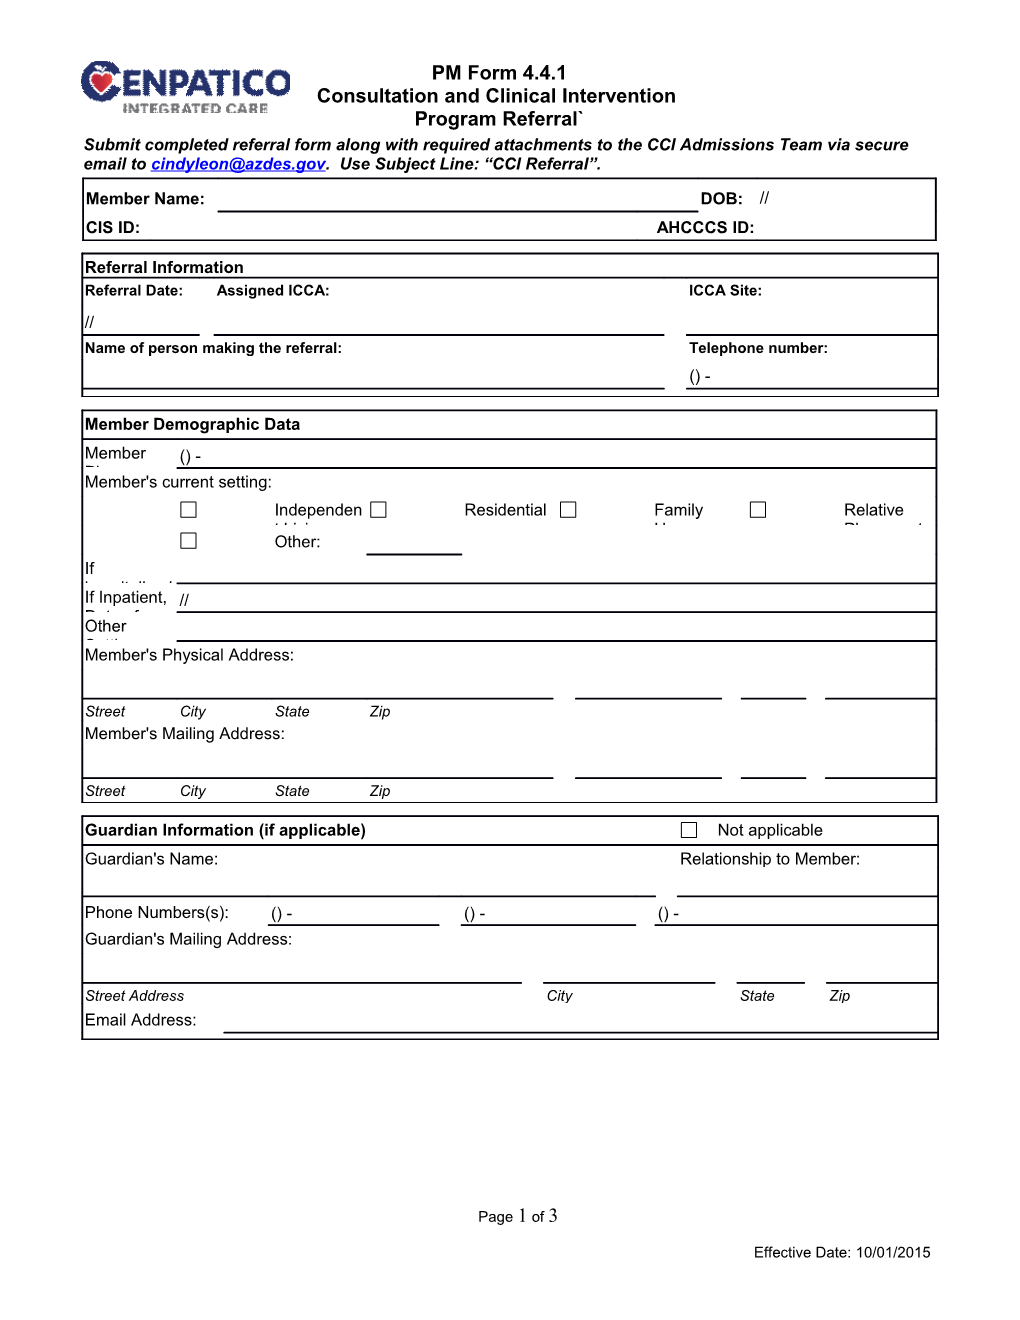 CPSA PM Form 10.38.1, CCI Program Referral